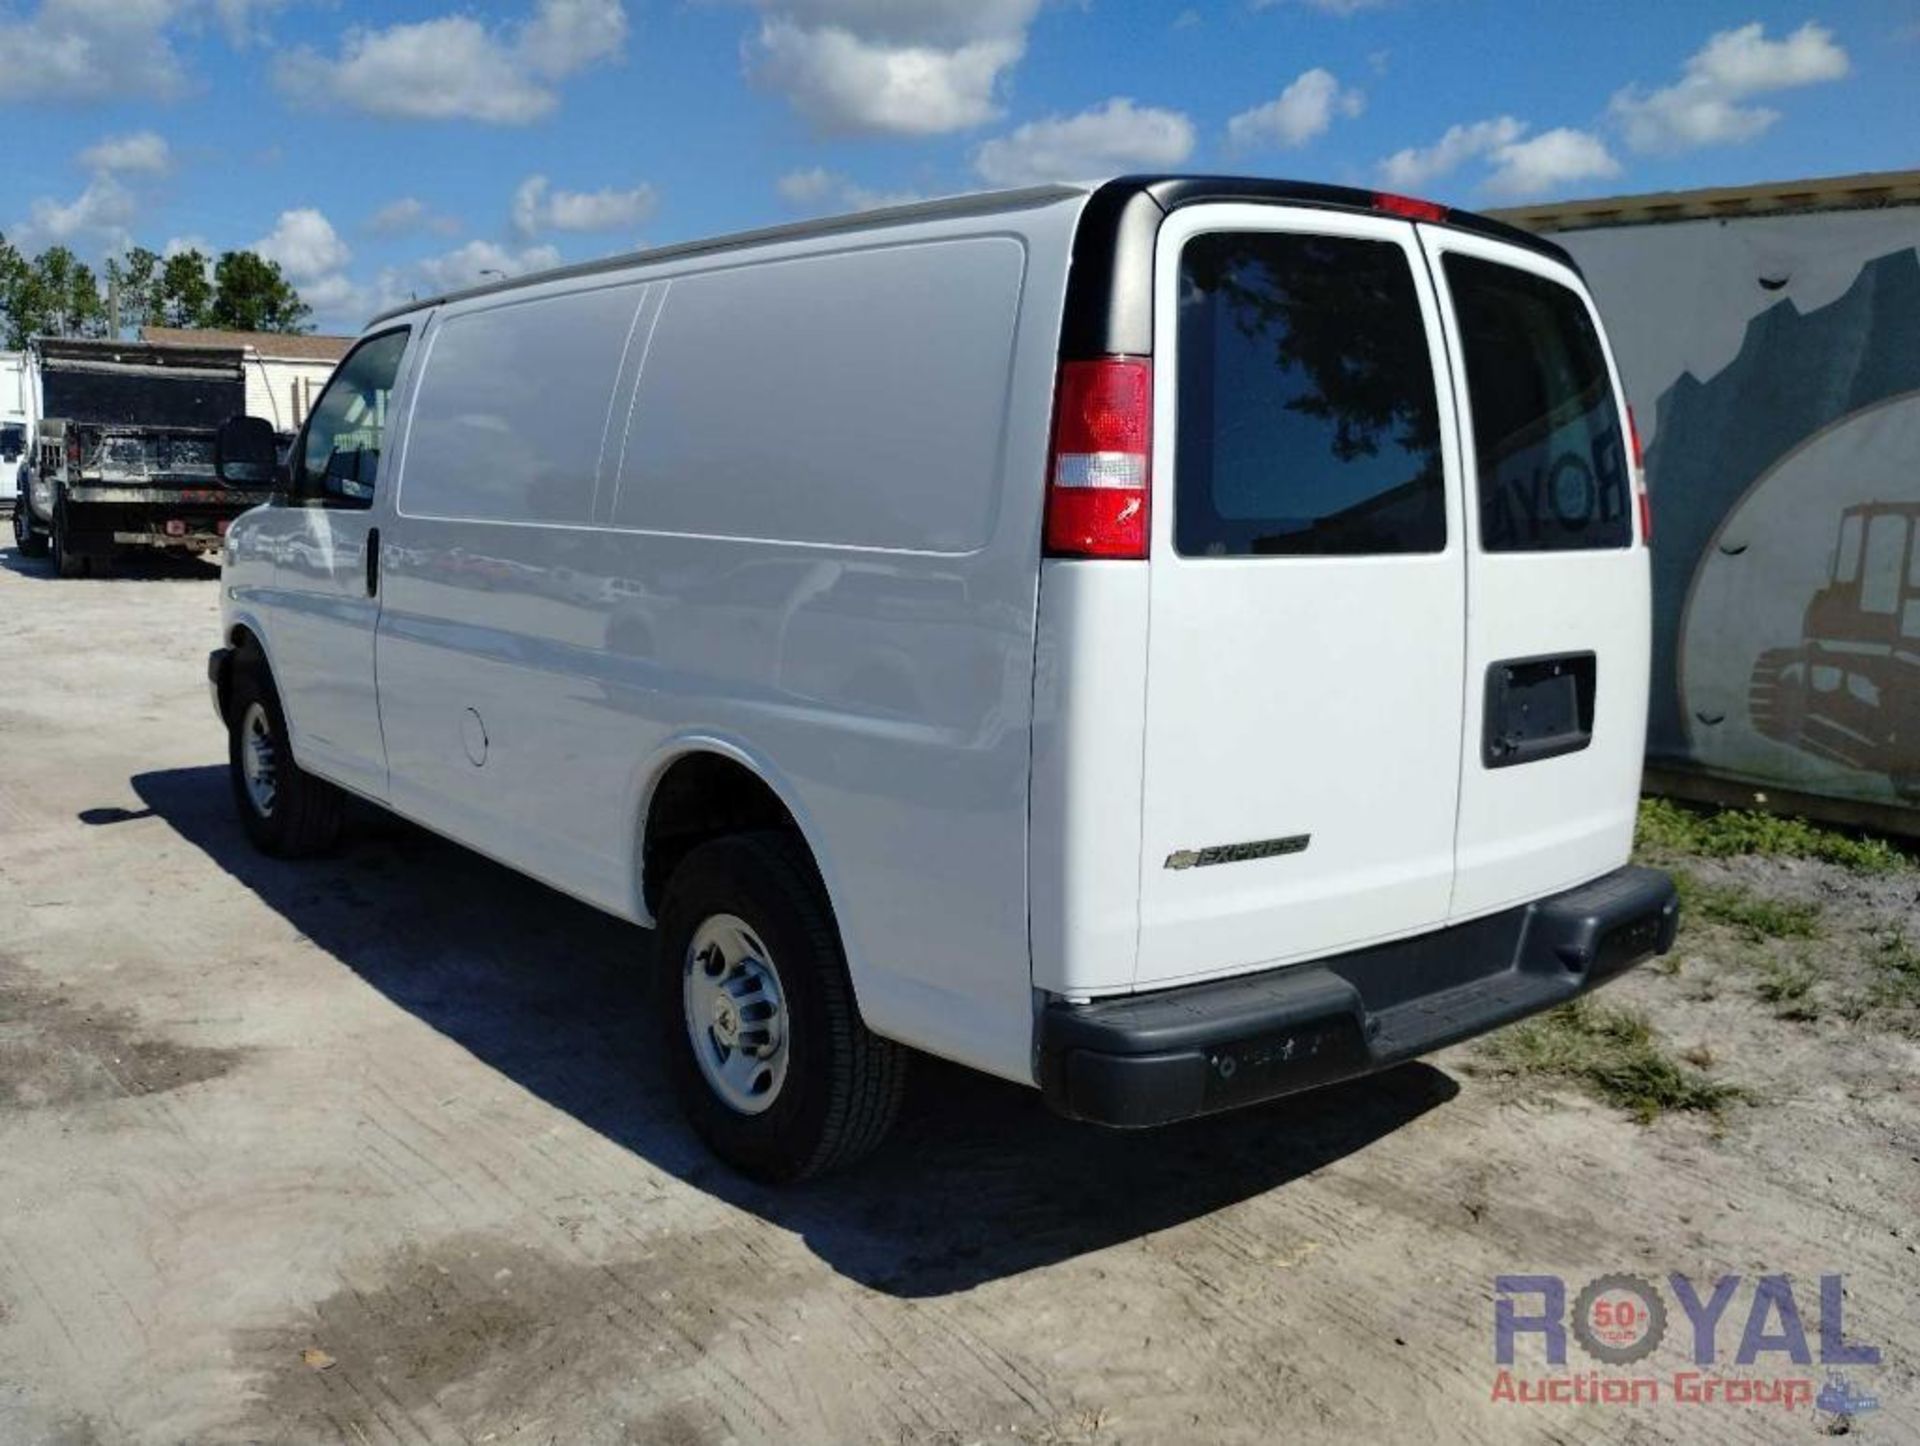 2021 Chevrolet Express Cargo Van - Image 4 of 24